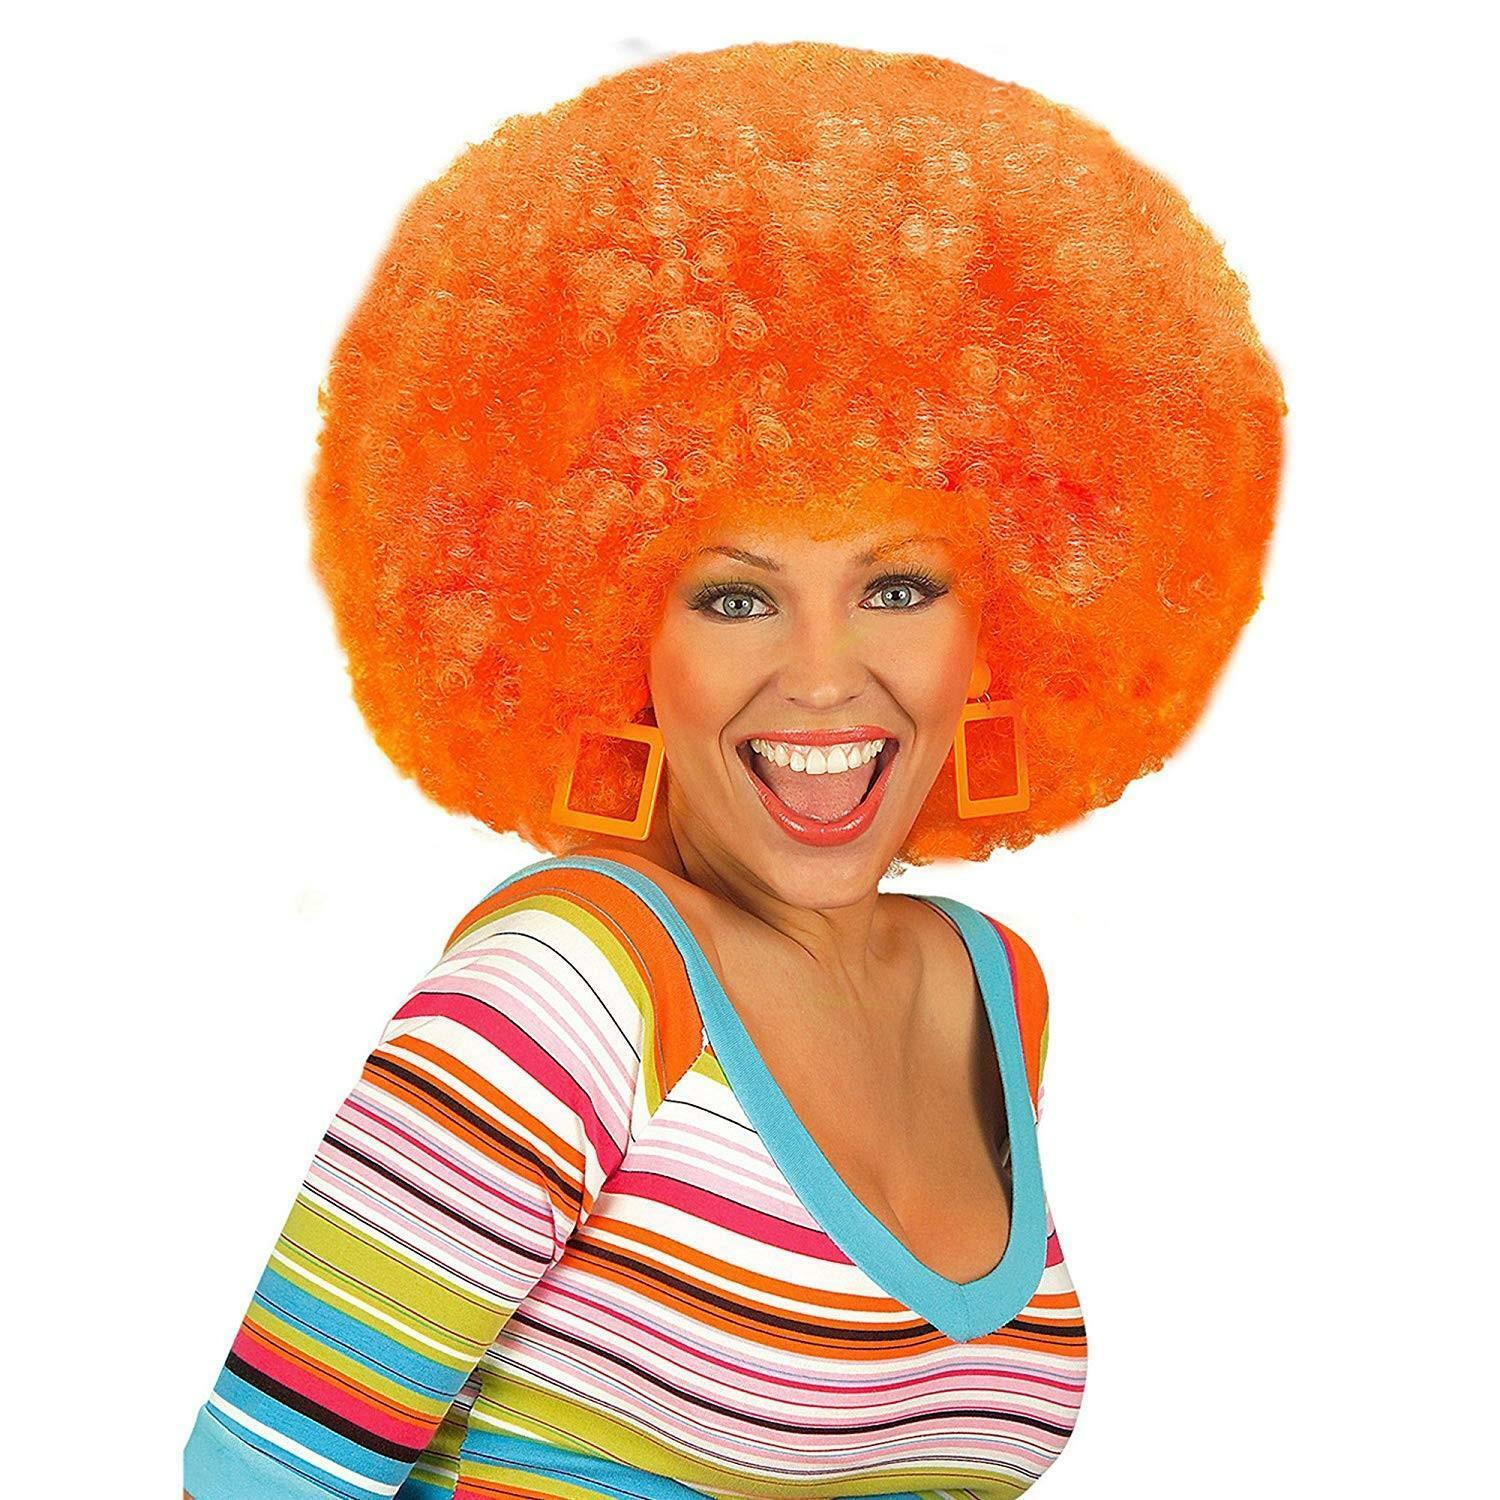 widmann parrucca riccia arancione